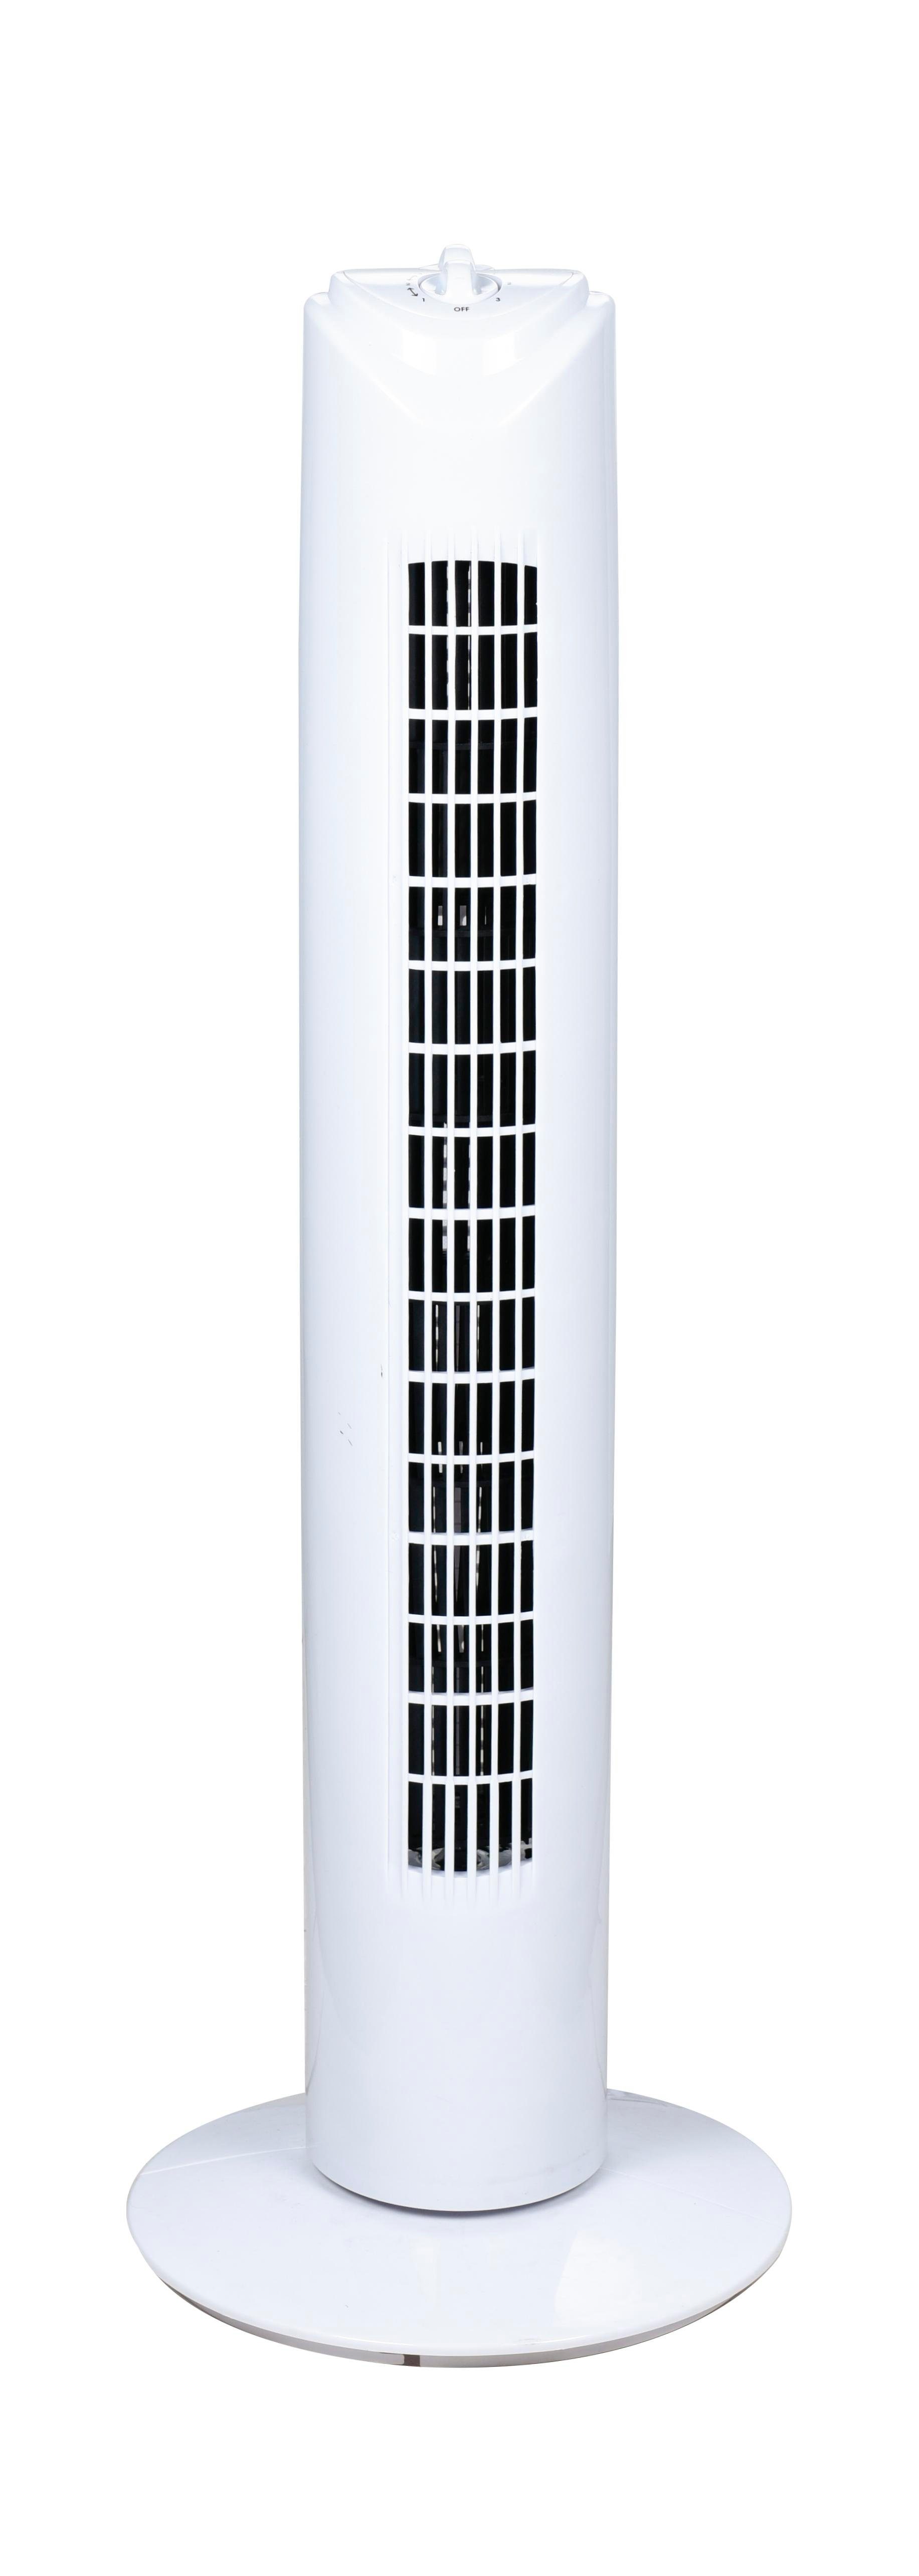 SALCO Turmventilator KLT-1082 weiß, 3 Stunden oszillierend, geräuscharm 2 Geschwindigkeitsstufen, Timer